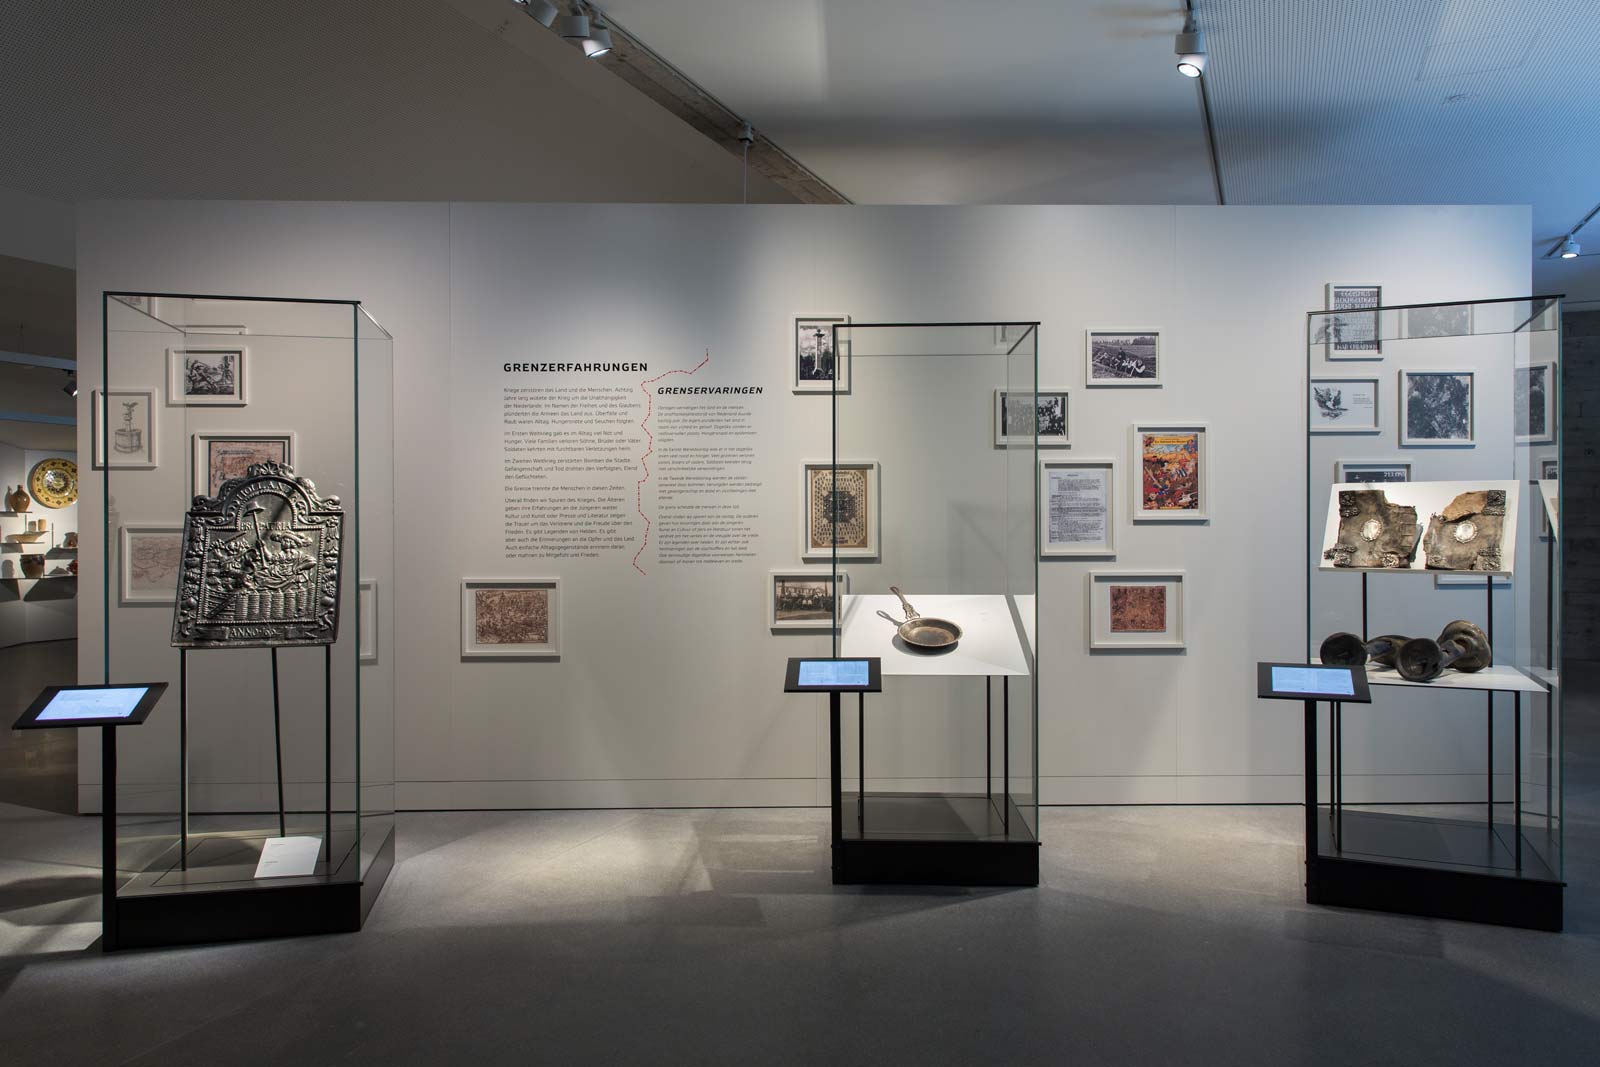 Das Referenzbild für Ausstellungsgestaltung aus der Dauerausstellung Grenze zeigt eine Medienstation mit Exponatpräsentation in Ganzglasvitrinen.